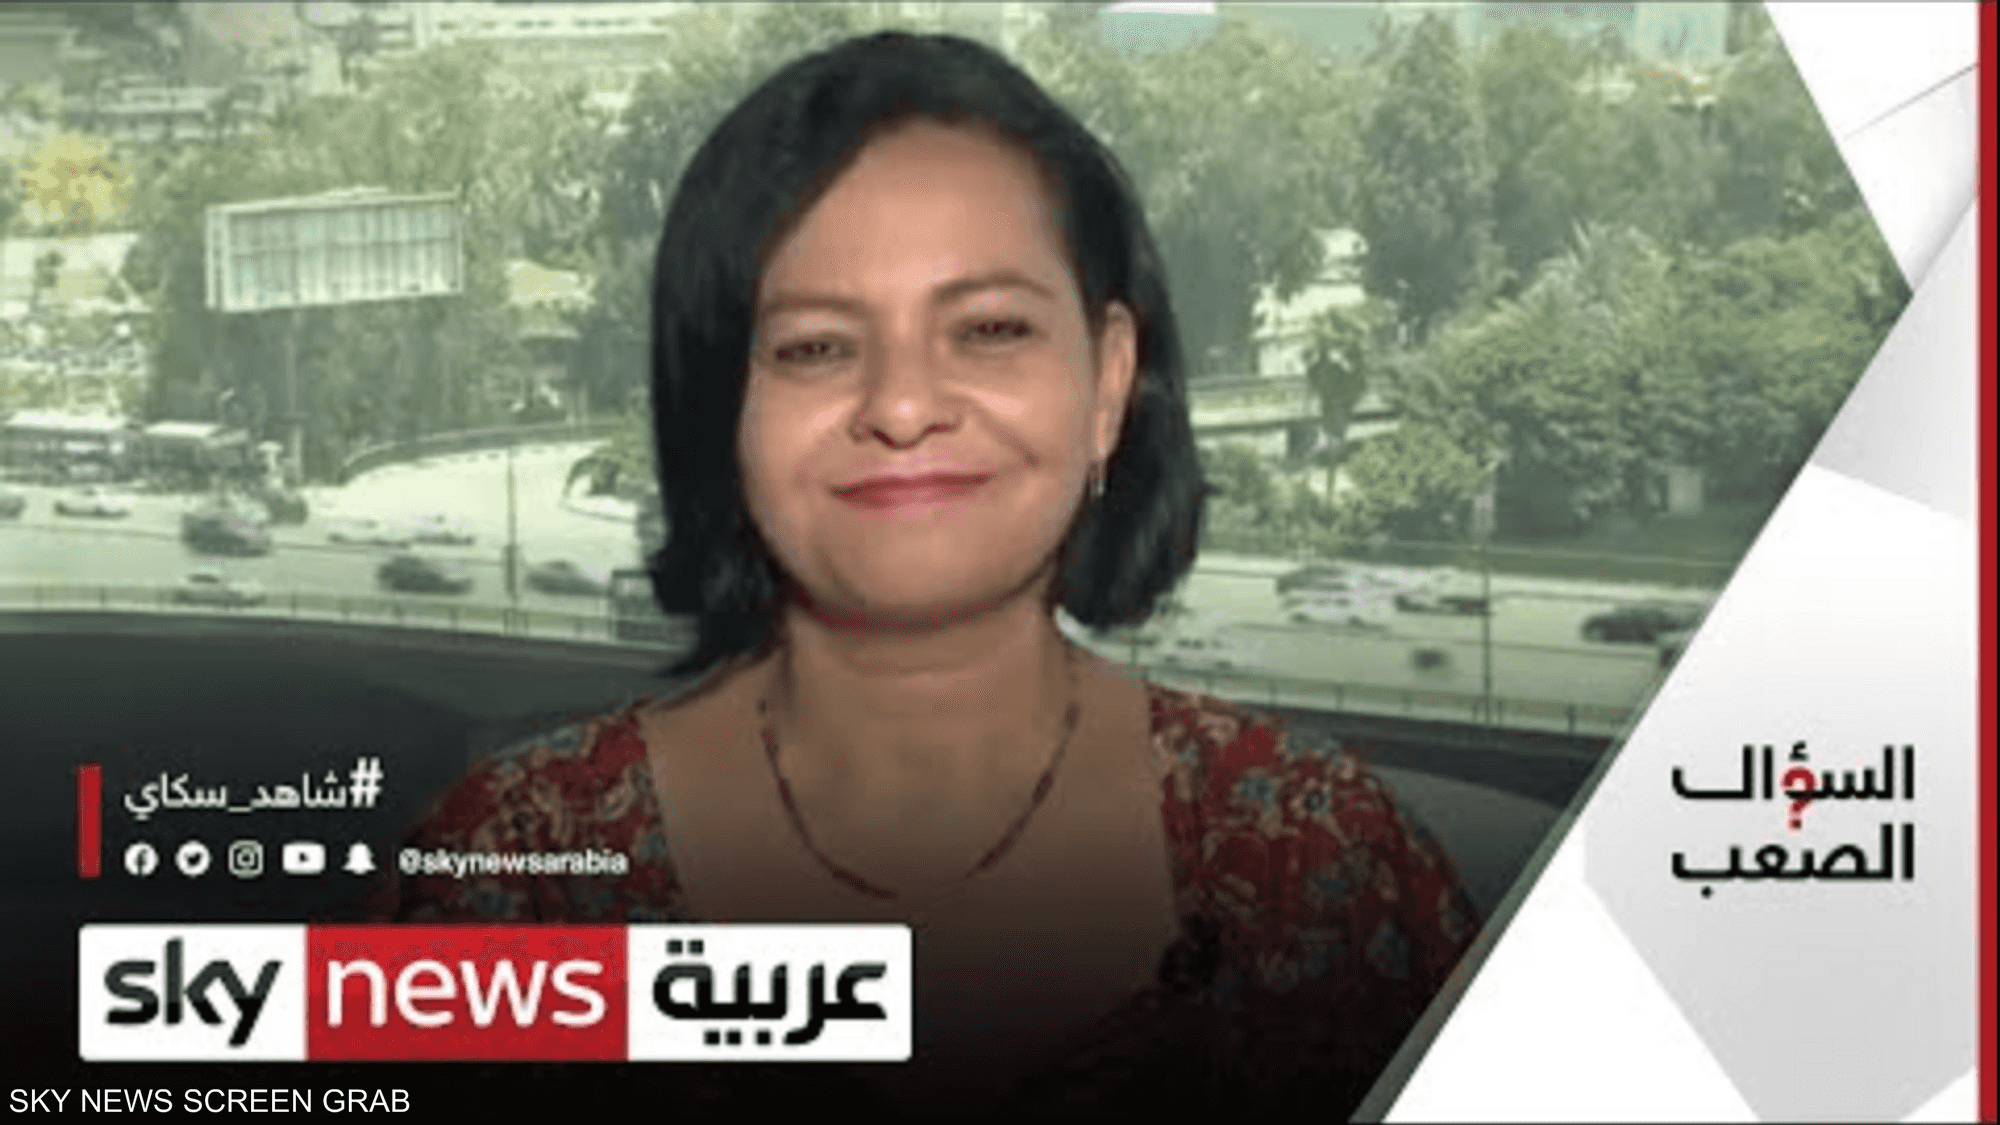 الكاتبة غادة عبد العال وسلاح السخرية لكسر التابوهات